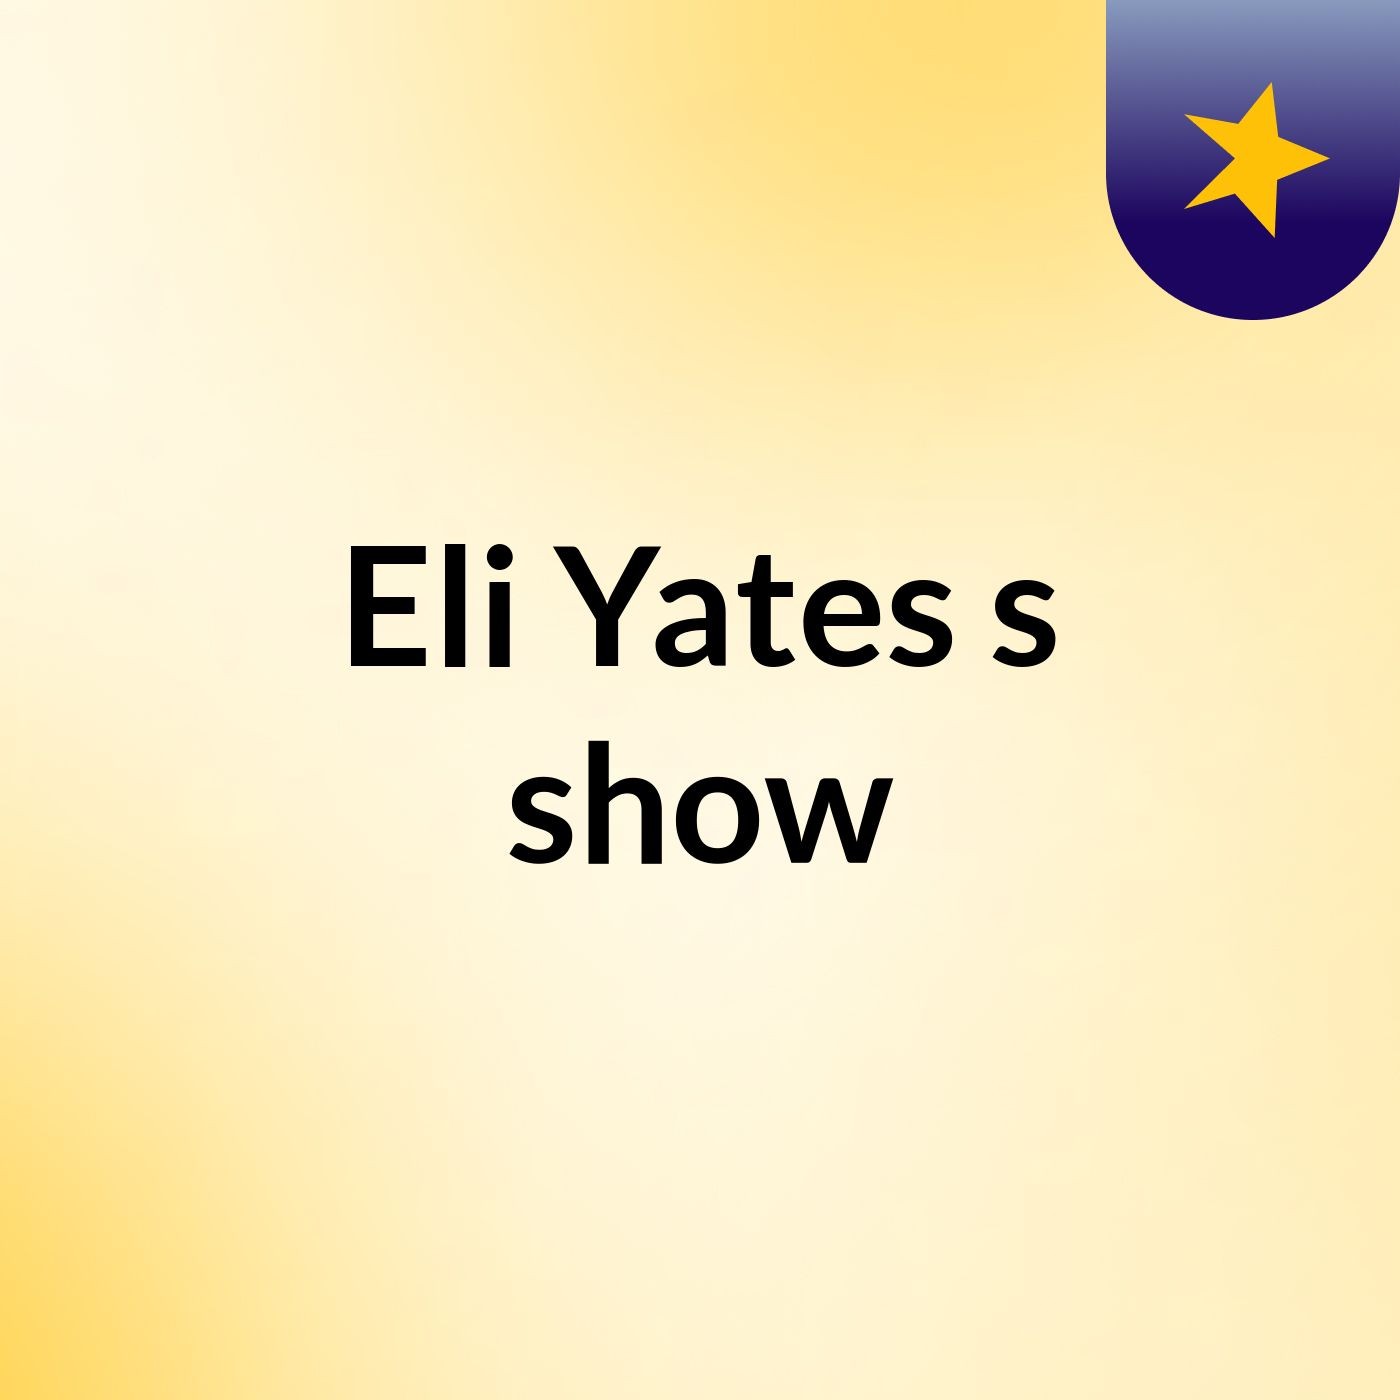 Eli Yates's show